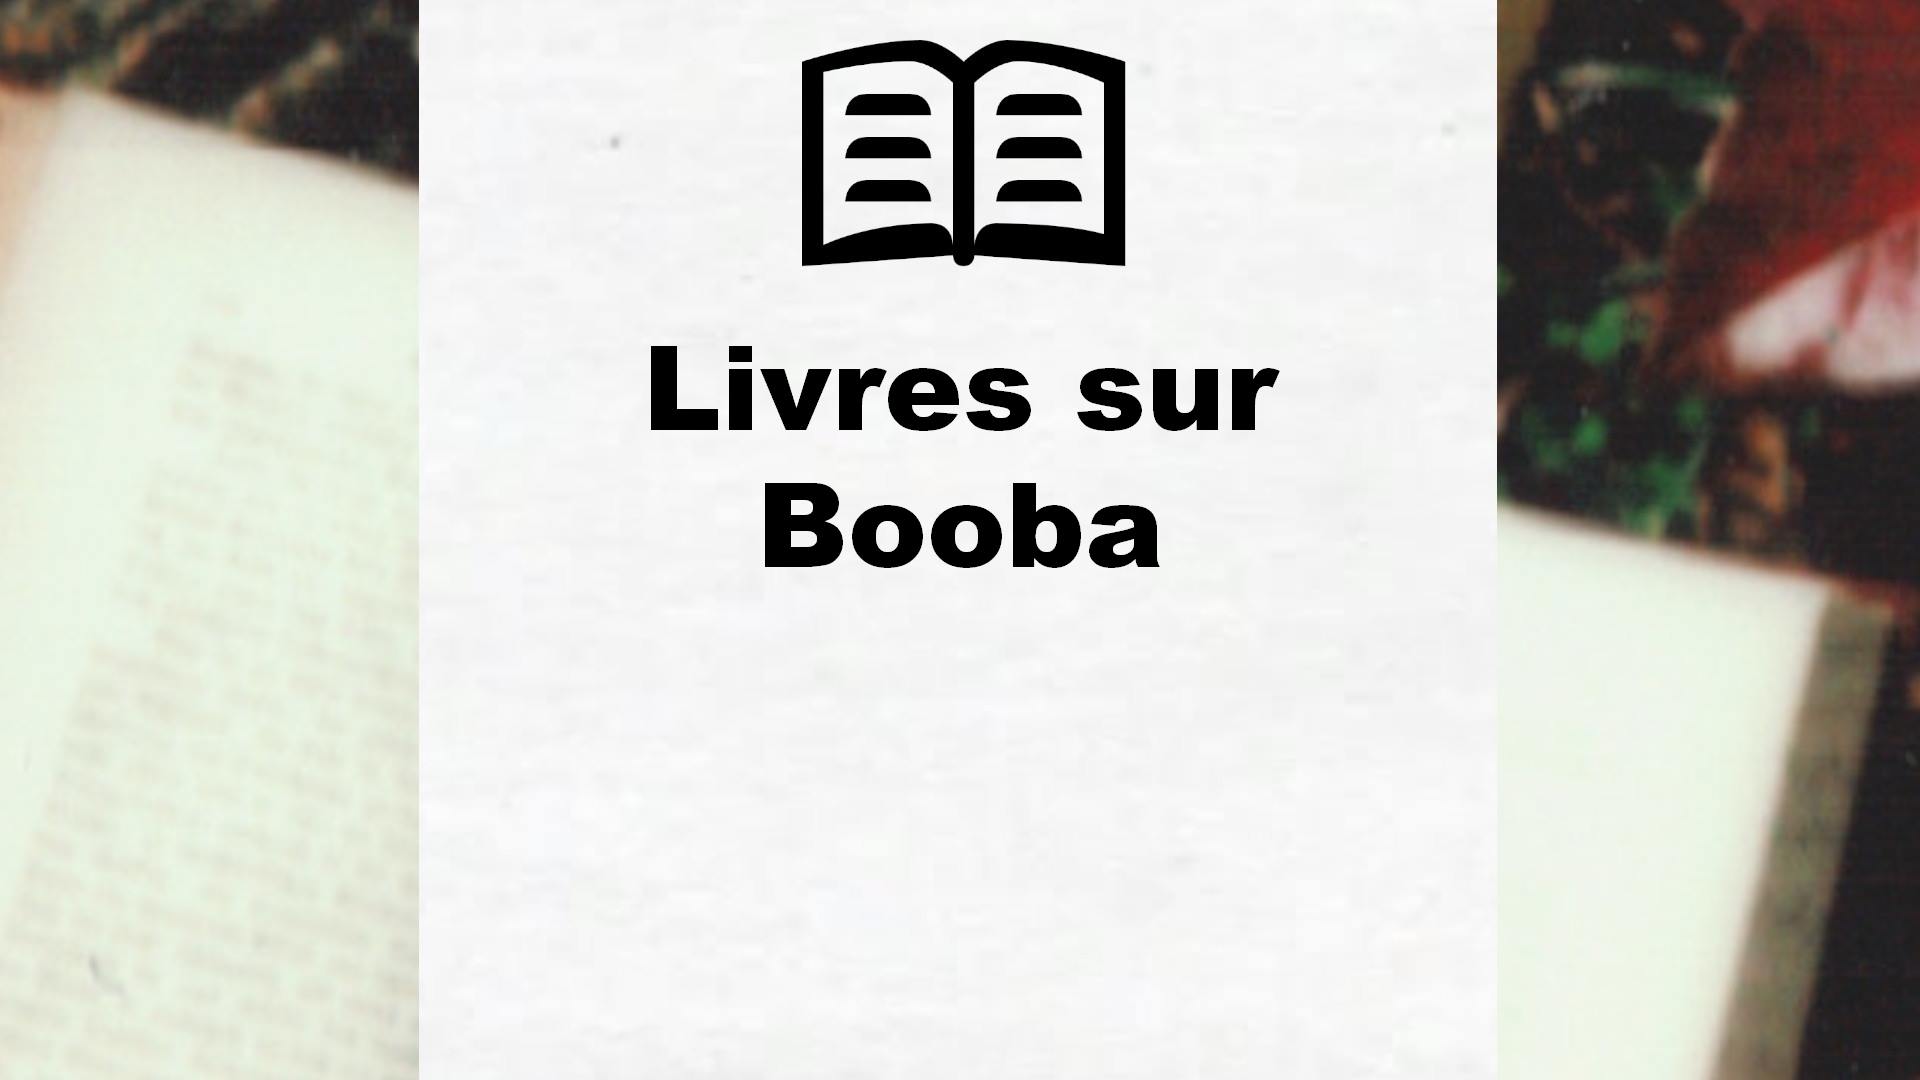 Livres sur Booba